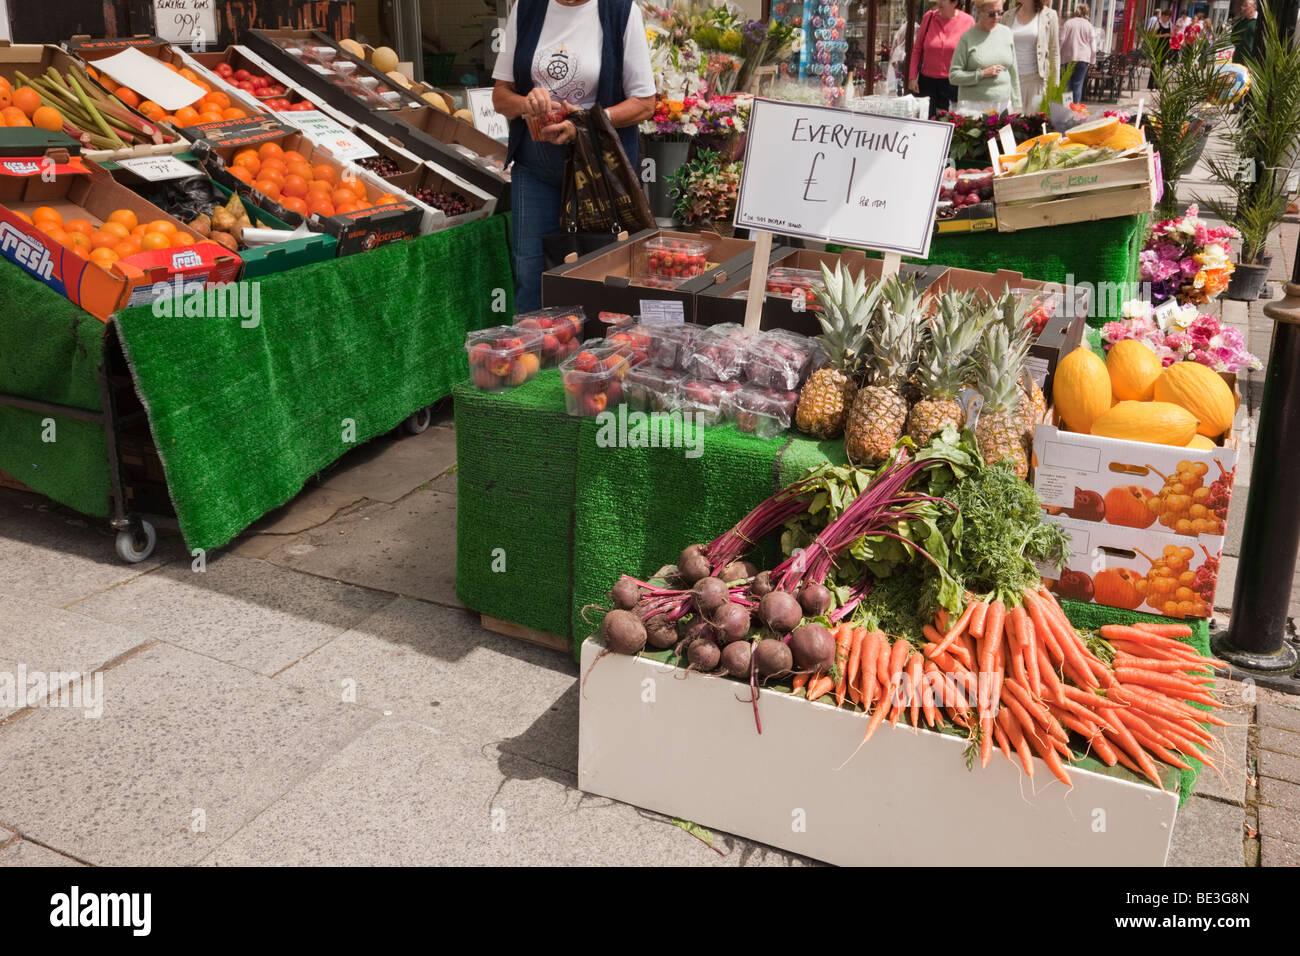 Green fruttivendolo scorporato la vendita di frutta e verdura sul display esterno. Inghilterra, Regno Unito. Foto Stock